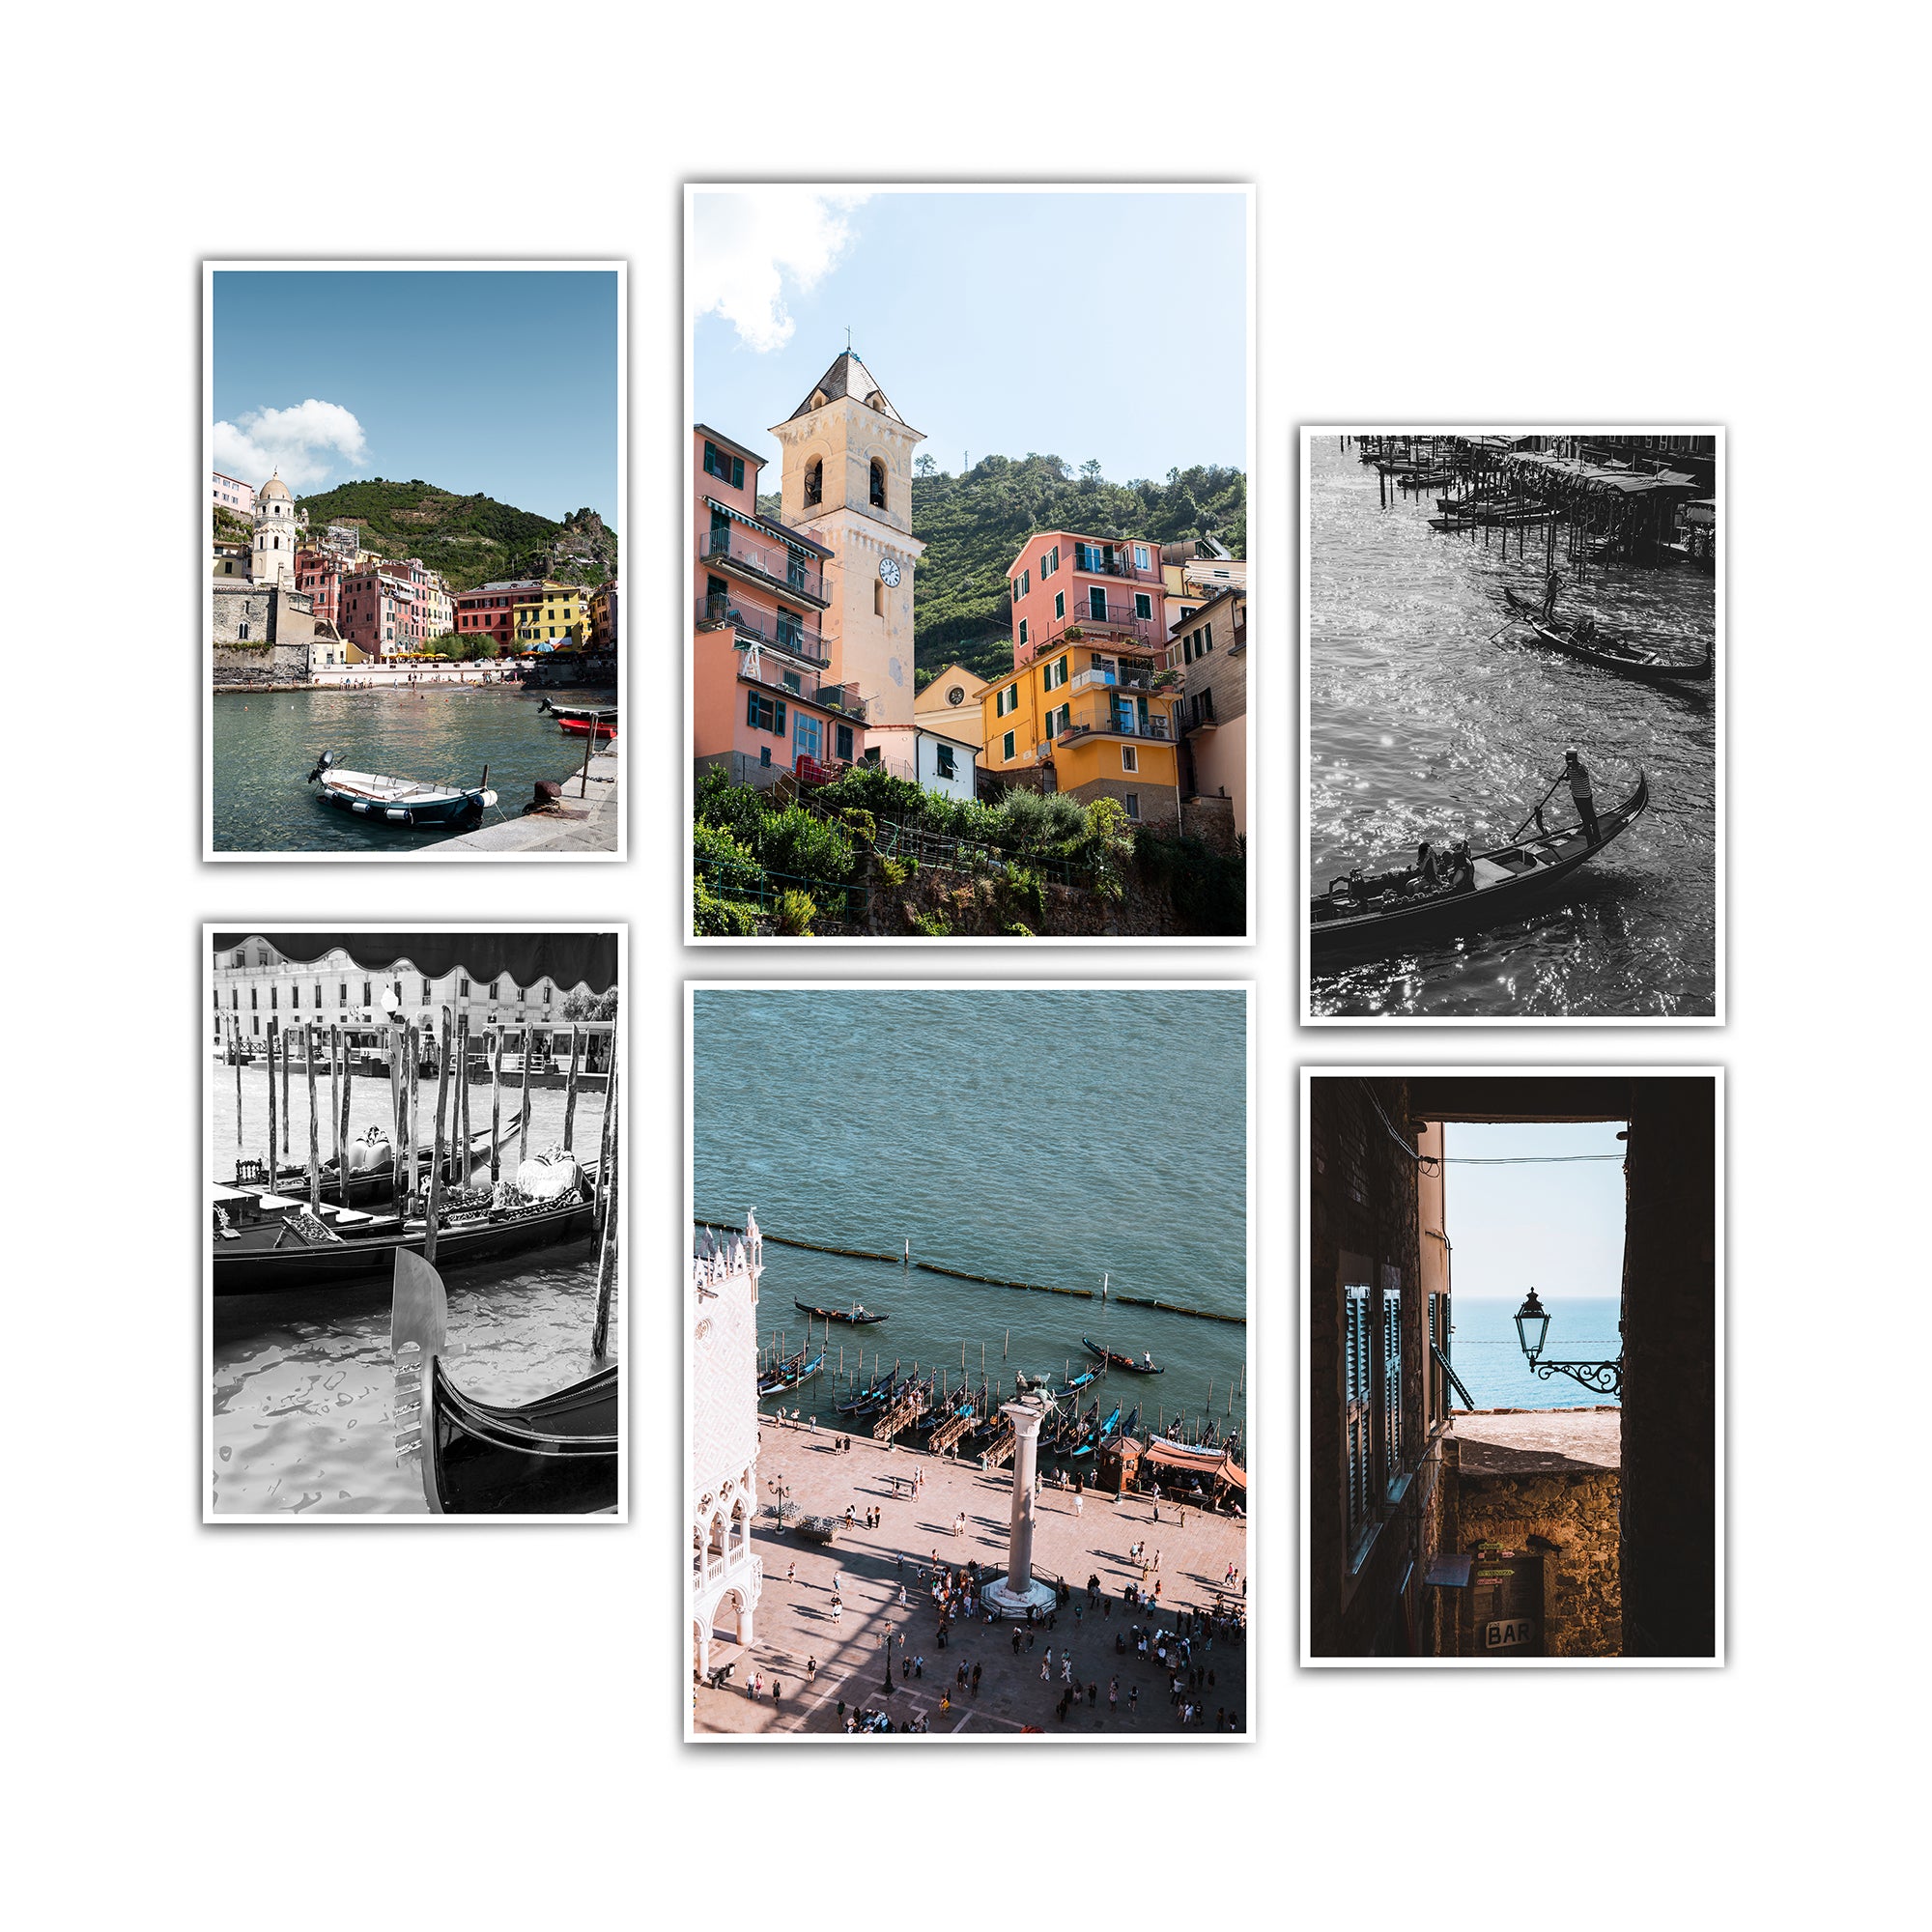 4one-Pictures-Poster-Set-Wohnzimmer-Natur-Italien-Spruch-meer-urlaub-bilder_4a6a6d91-5ecd-459f-96d0-8825c8d06339.jpg